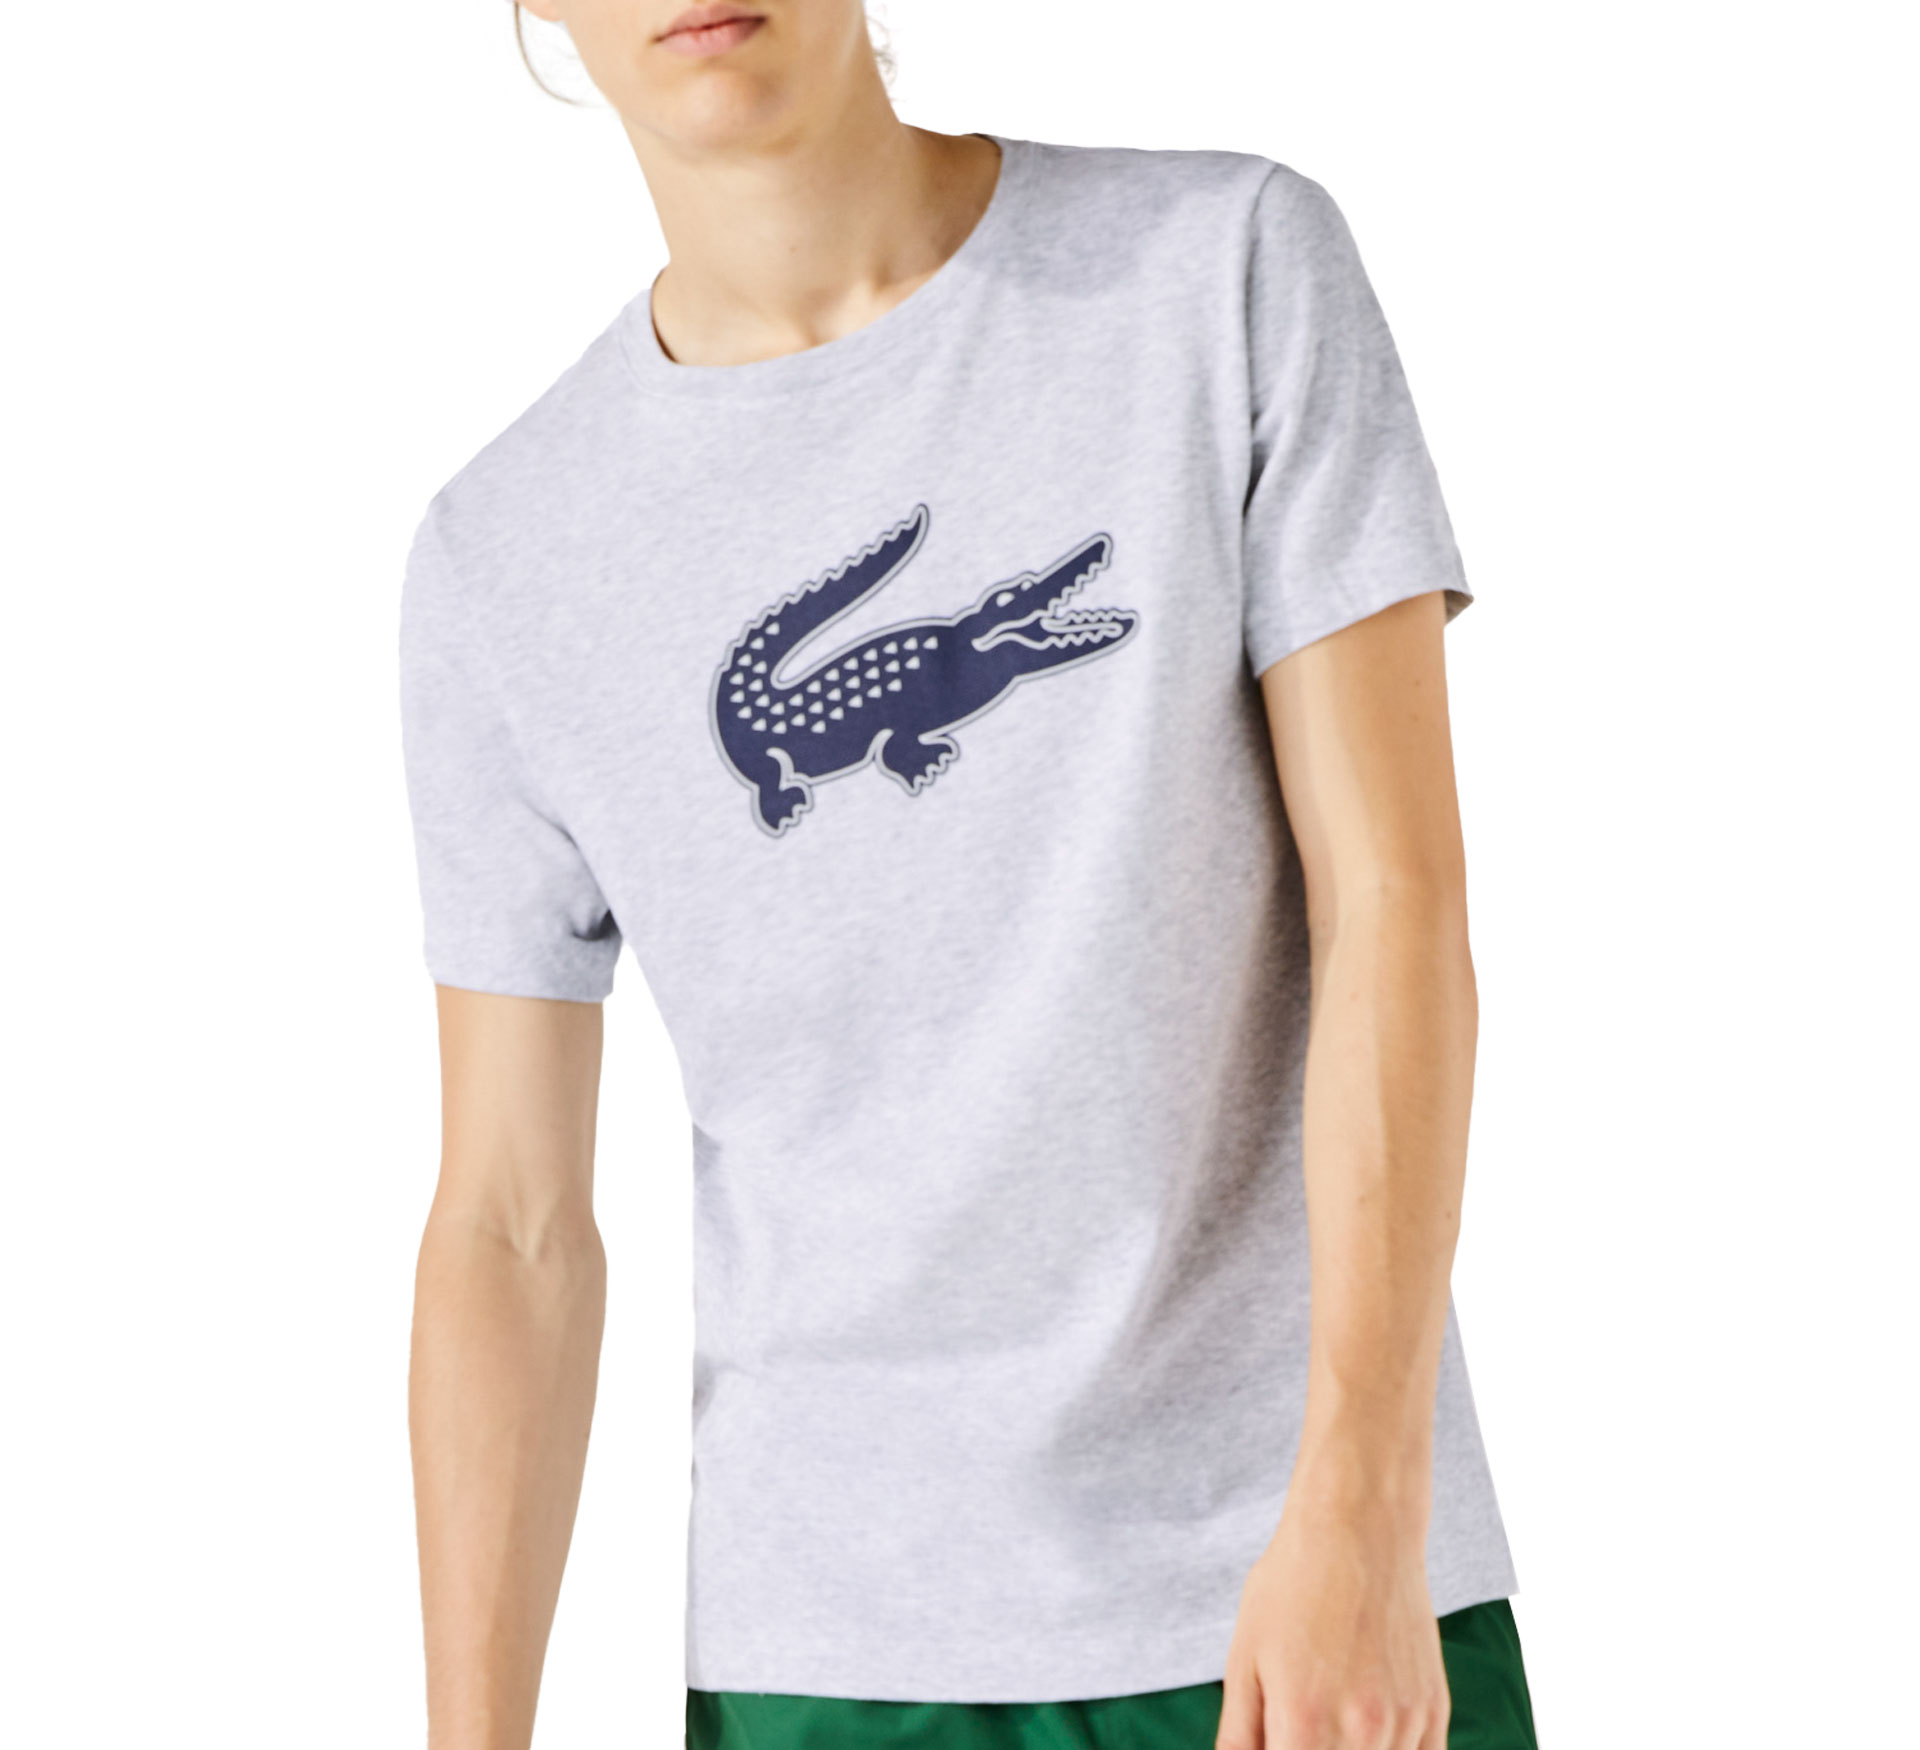 T-shirt Lacoste Sport 3D Print Crocodile